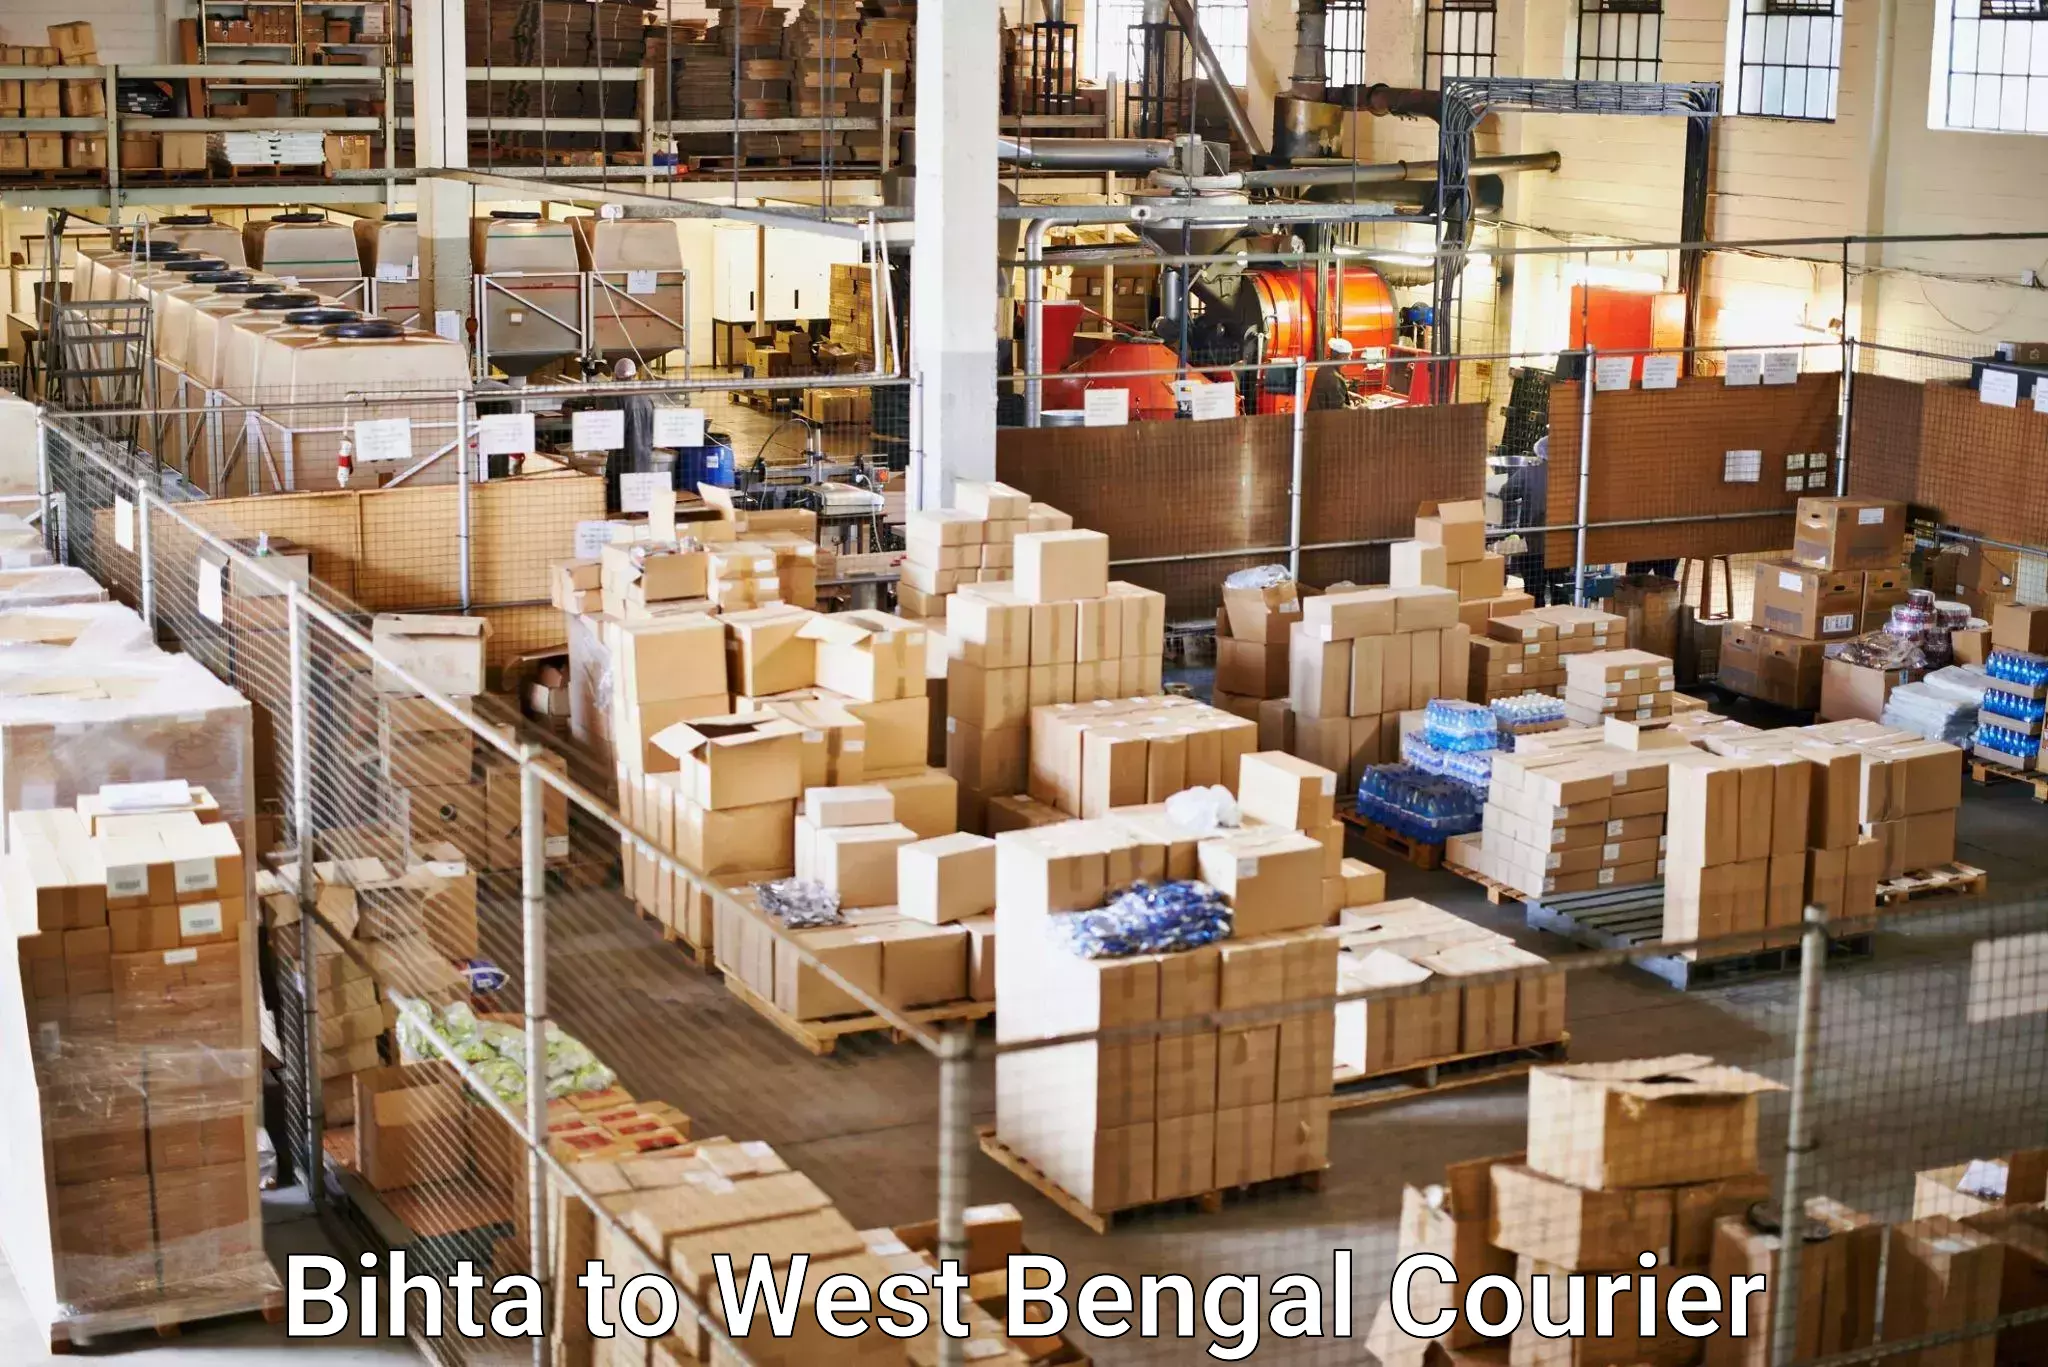 Residential courier service Bihta to Gopalnagar